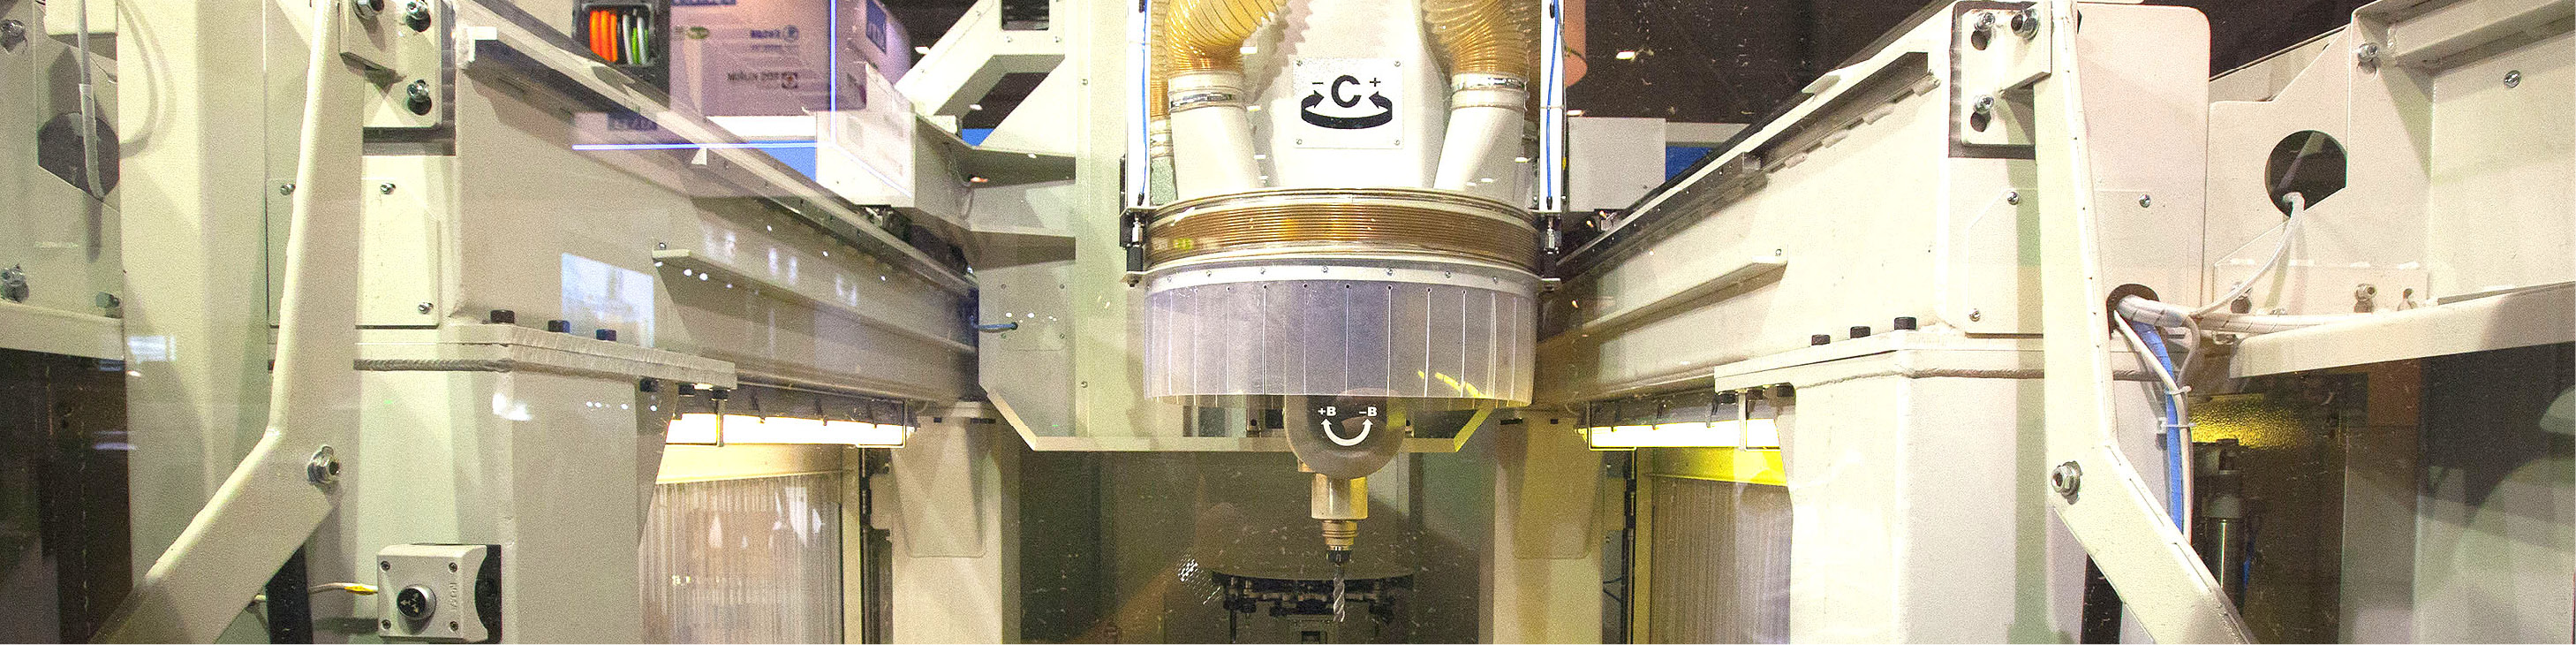 Rezanie a opracovanie materiálu na CNC strojoch